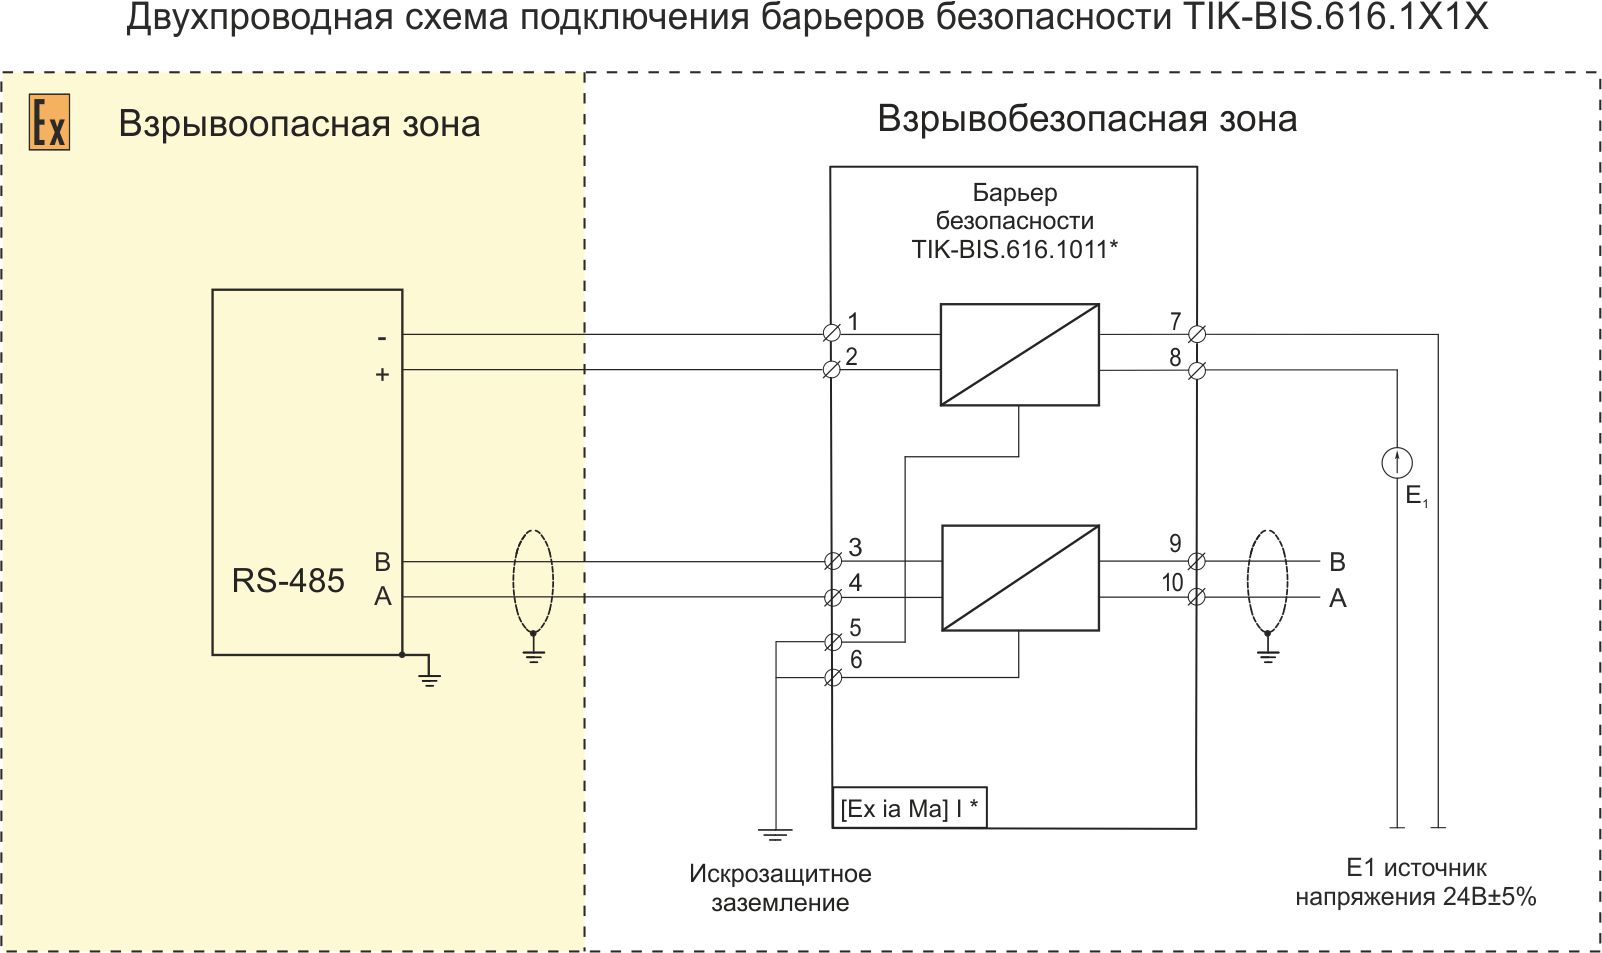 Схема подключения к барьеру безопасности TIK-BIS.616.1X1X